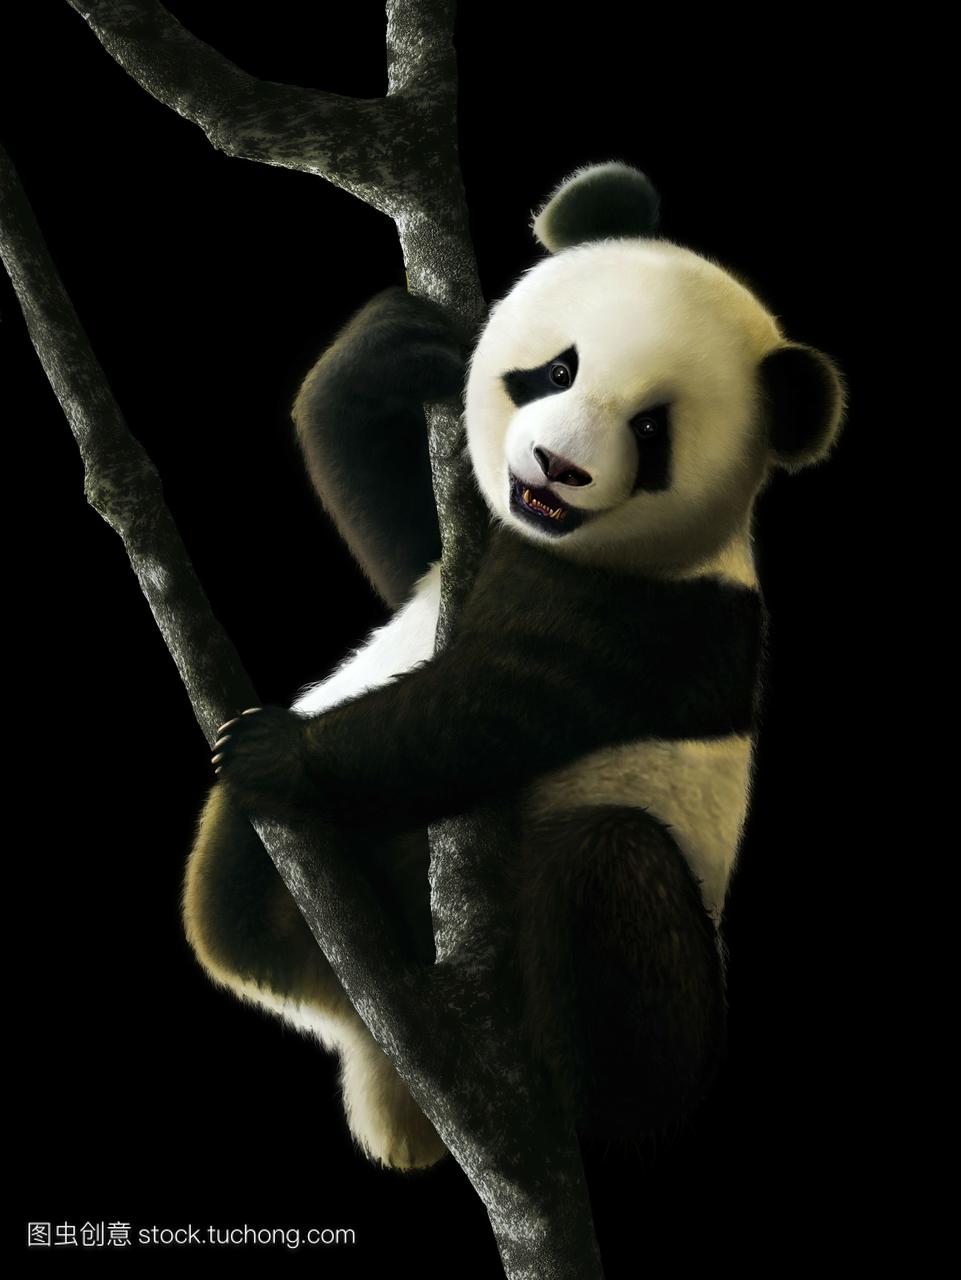 这幅画展示了一只幼年大熊猫ailuropodamelan